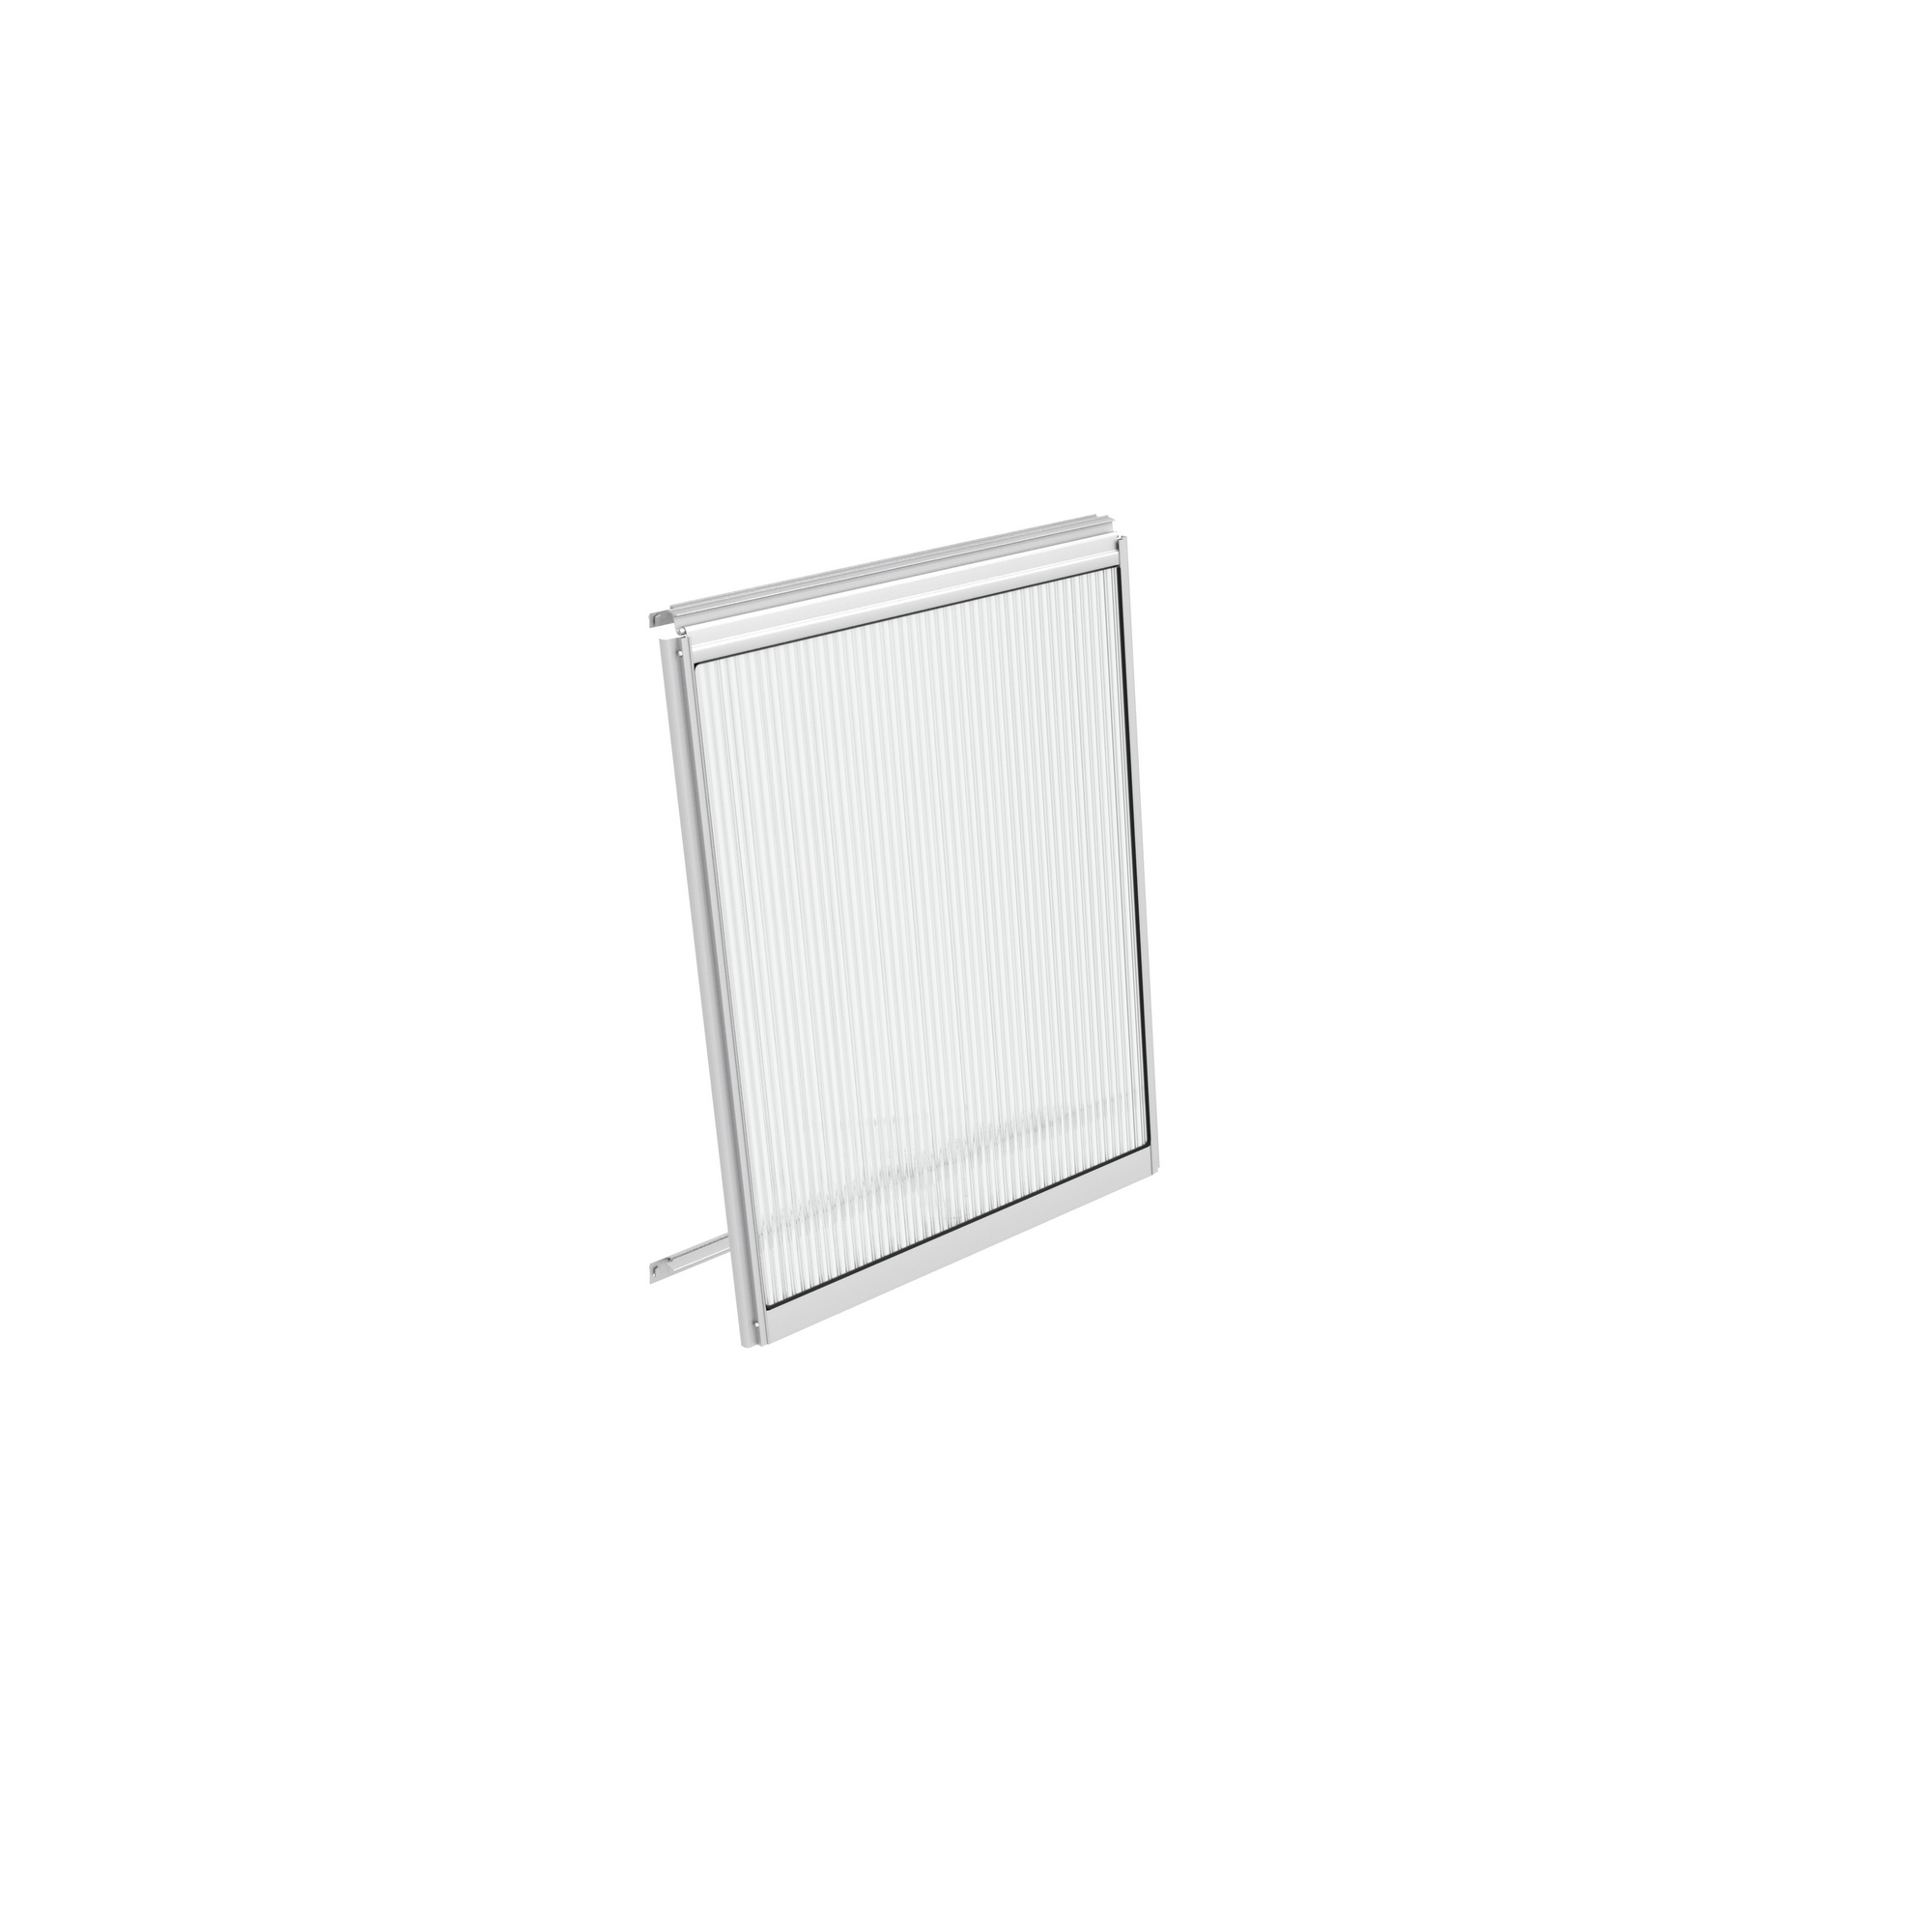 Alu-Seitenfenster für Gewächshäuser aluminiumfarben 59 x 79,2 cm + product picture